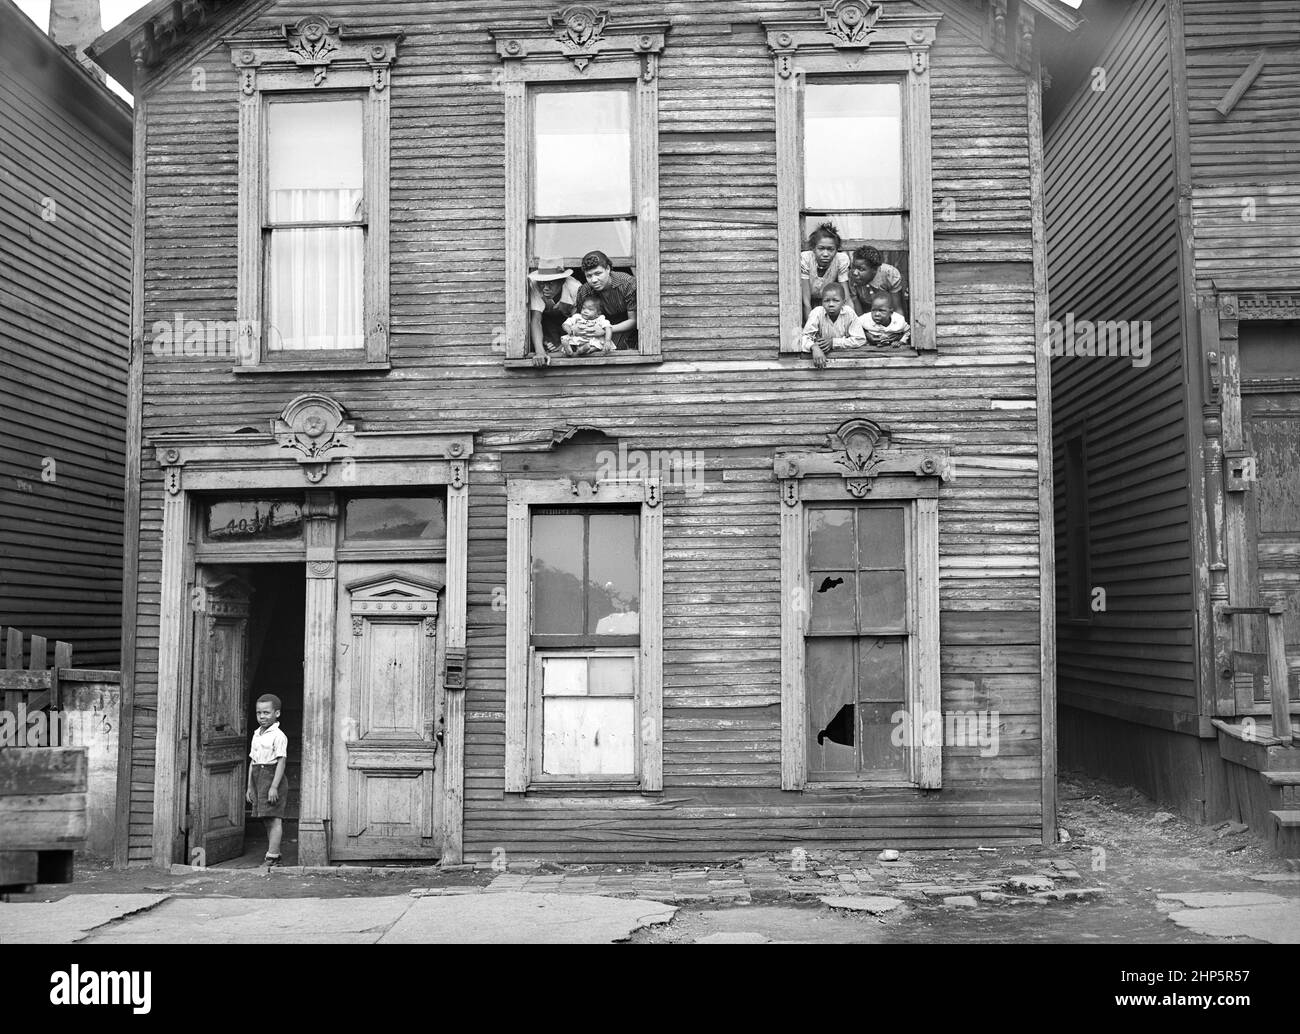 Groupe de personnes regardant par les fenêtres dans Rundown House, Chicago, Illinois, USA, Russell Lee, U.S. Office of War information/États-Unis Administration de la sécurité agricole, avril 1941 Banque D'Images